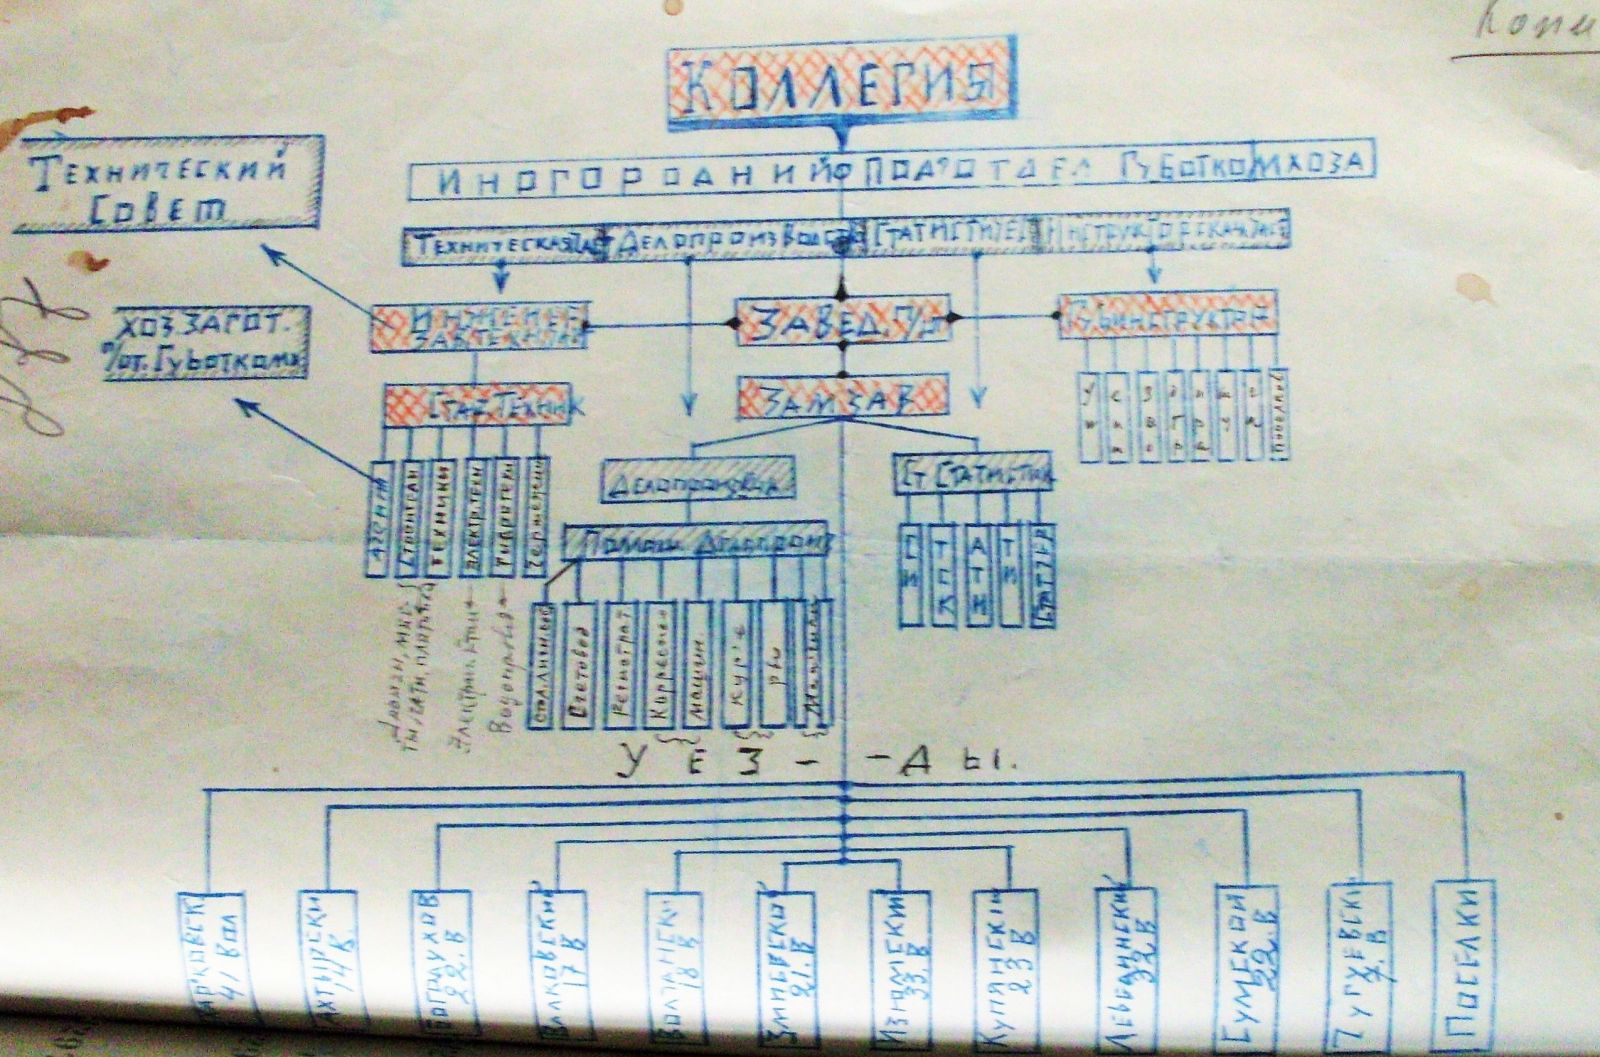 Раритетна схема: структура Харківського Губкомунгоспу у 1920 році. Другий зверху прямокутник у лівій частині листа очолював Веніамін Басіс